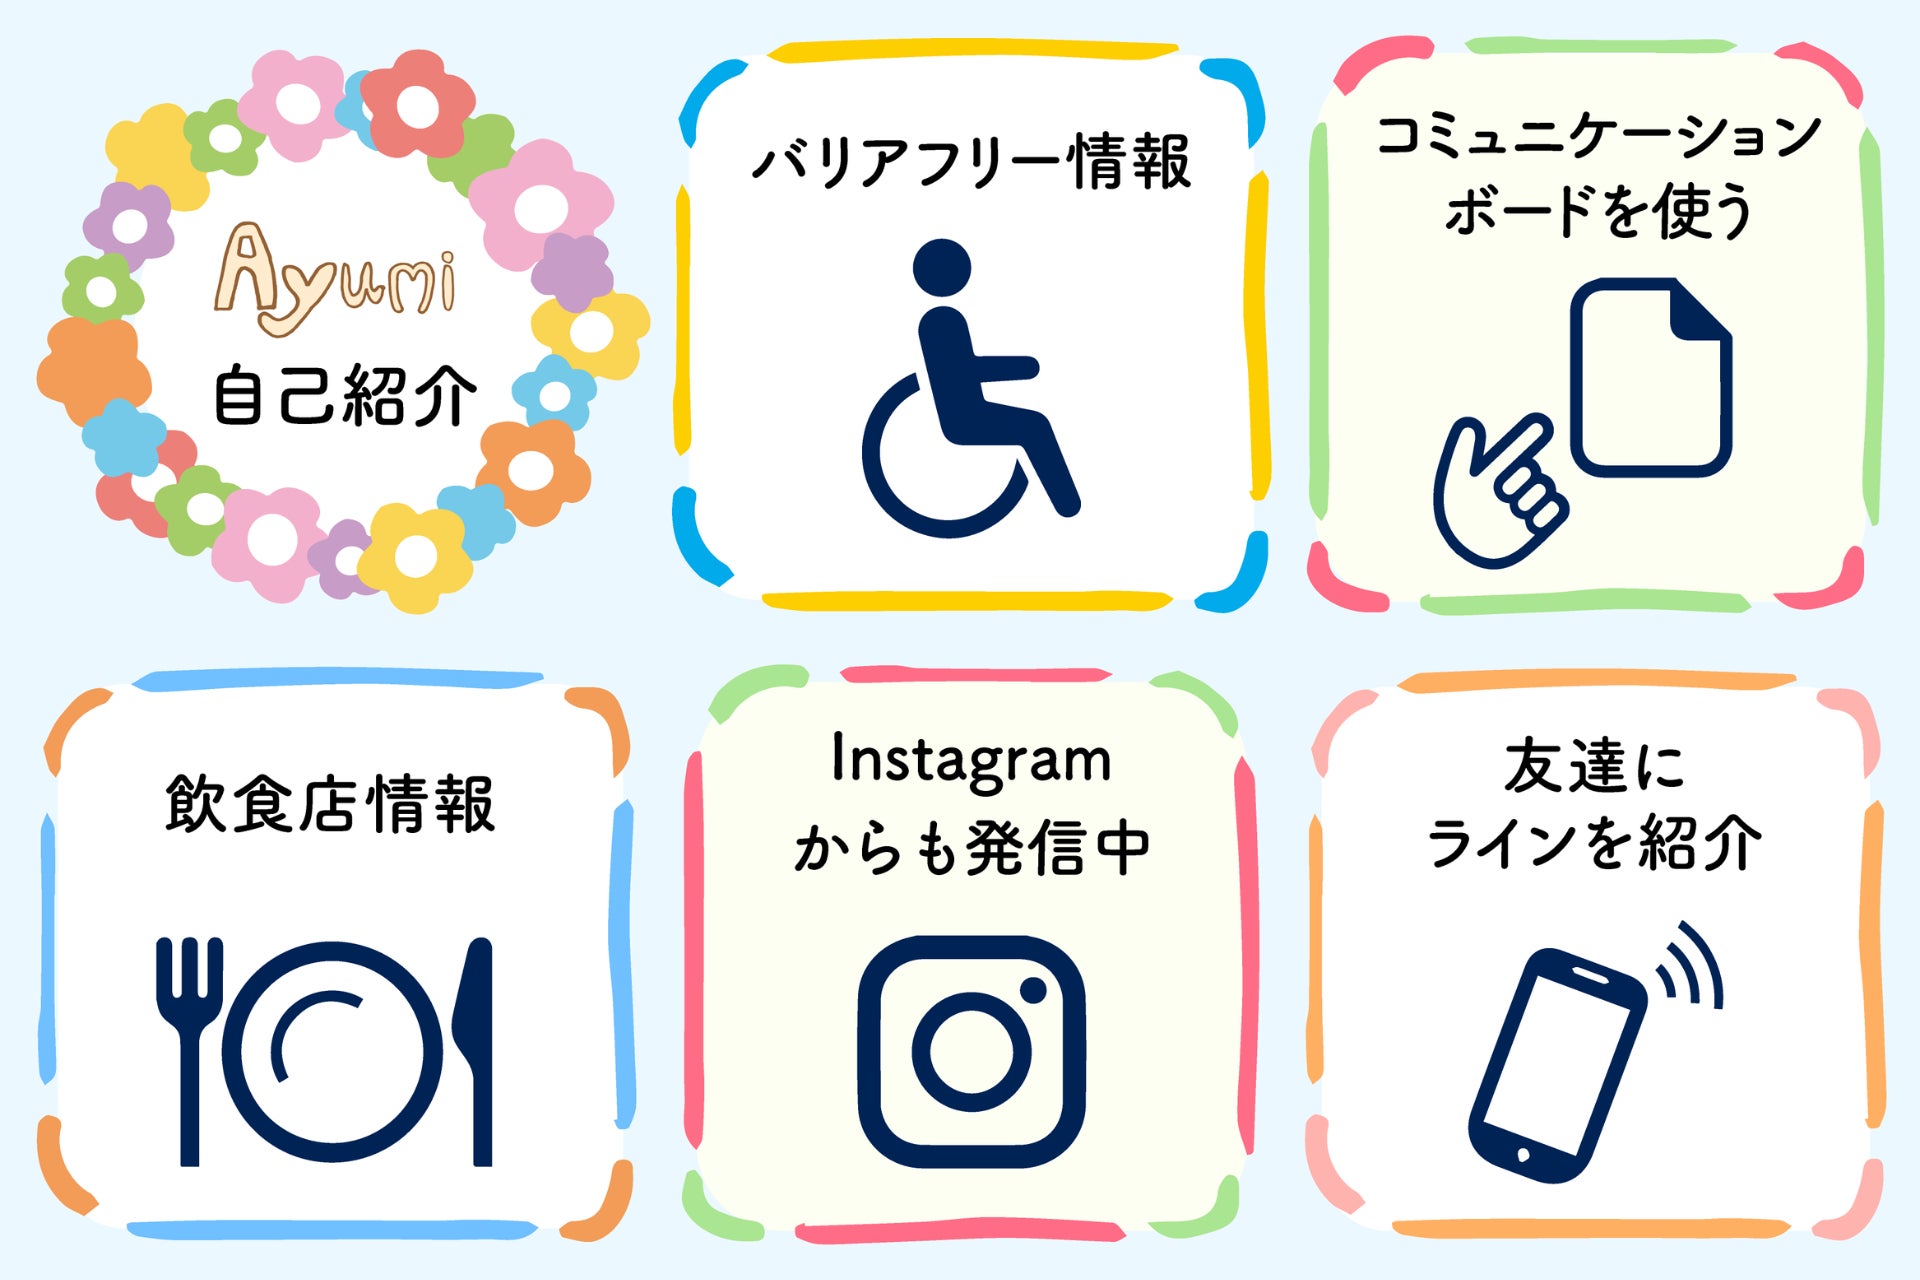 【コミュニケーションの障害を減らす】一般社団法人Ayumiが障害者向けのコミュニケーションボードを新たに開発し、無料配布します。のサブ画像5